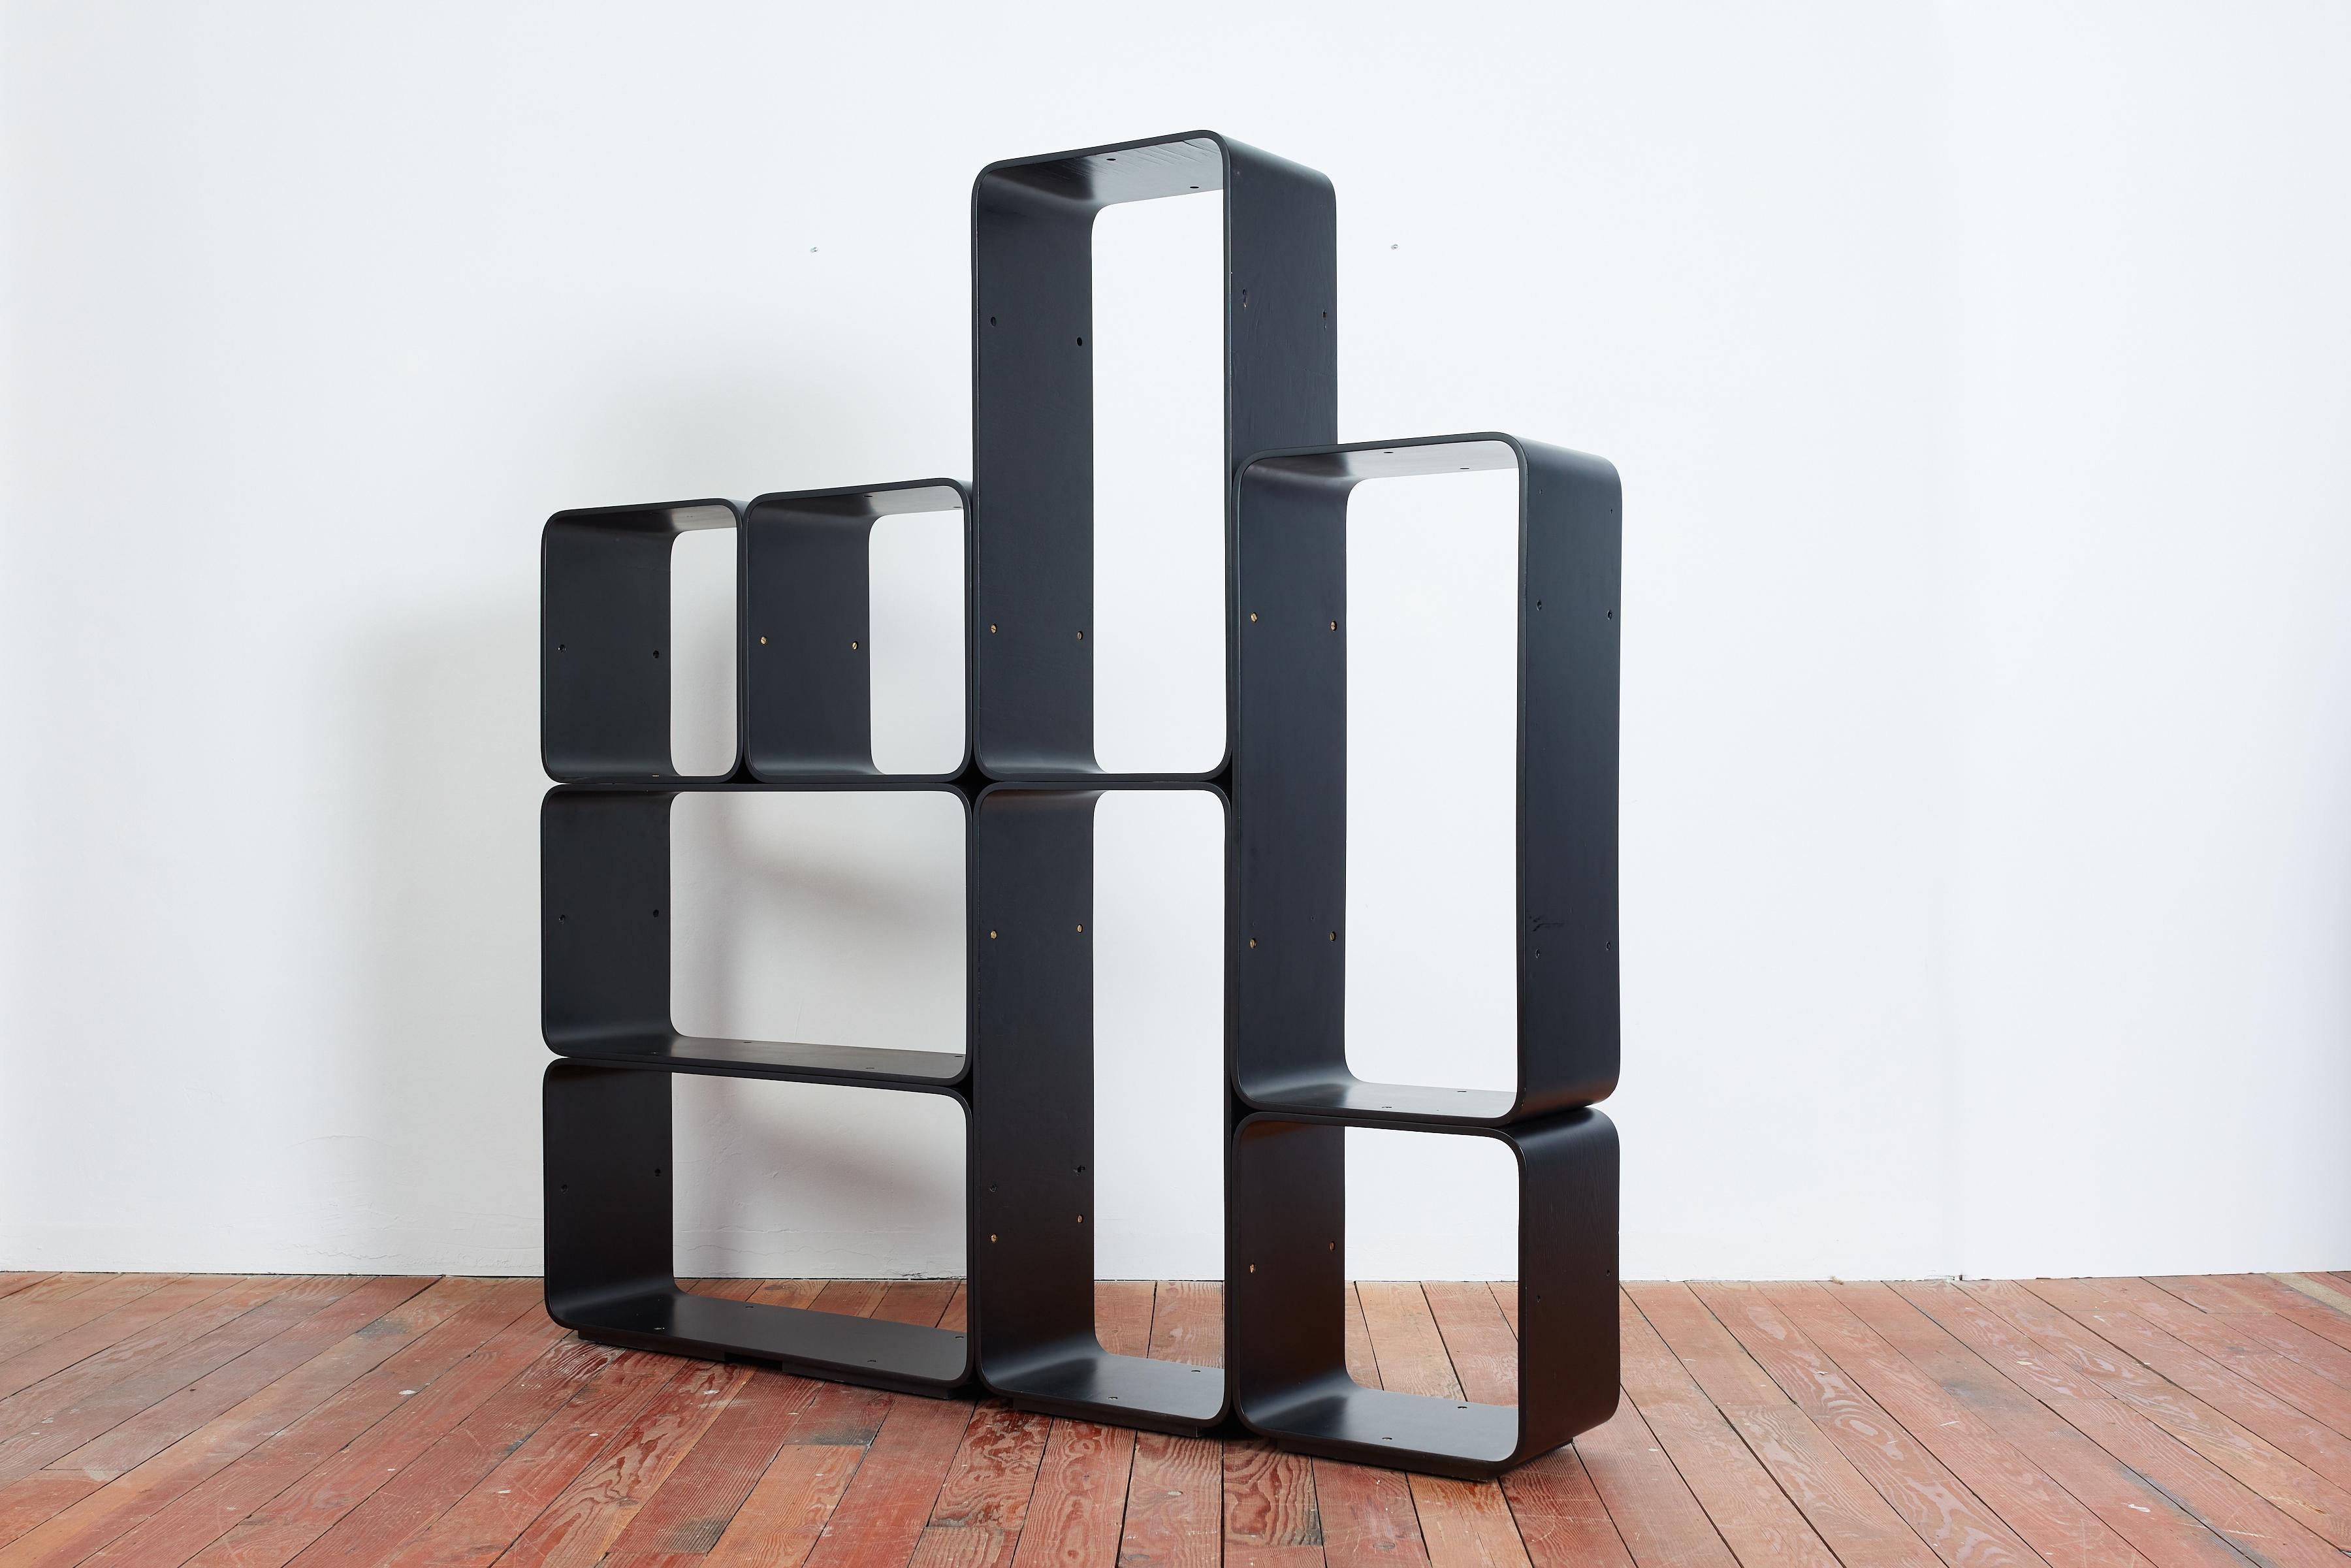 Italienisches modulares Bücherregal von Carlo de Carli für Fiarm - Italien, 1970er
Bestehend aus 5 rechteckigen und 3 quadratischen Modulen - Das Regal ist mit Messingbeschlägen verbunden und aus einem Stück gefertigt
Original schwarzer Lack -